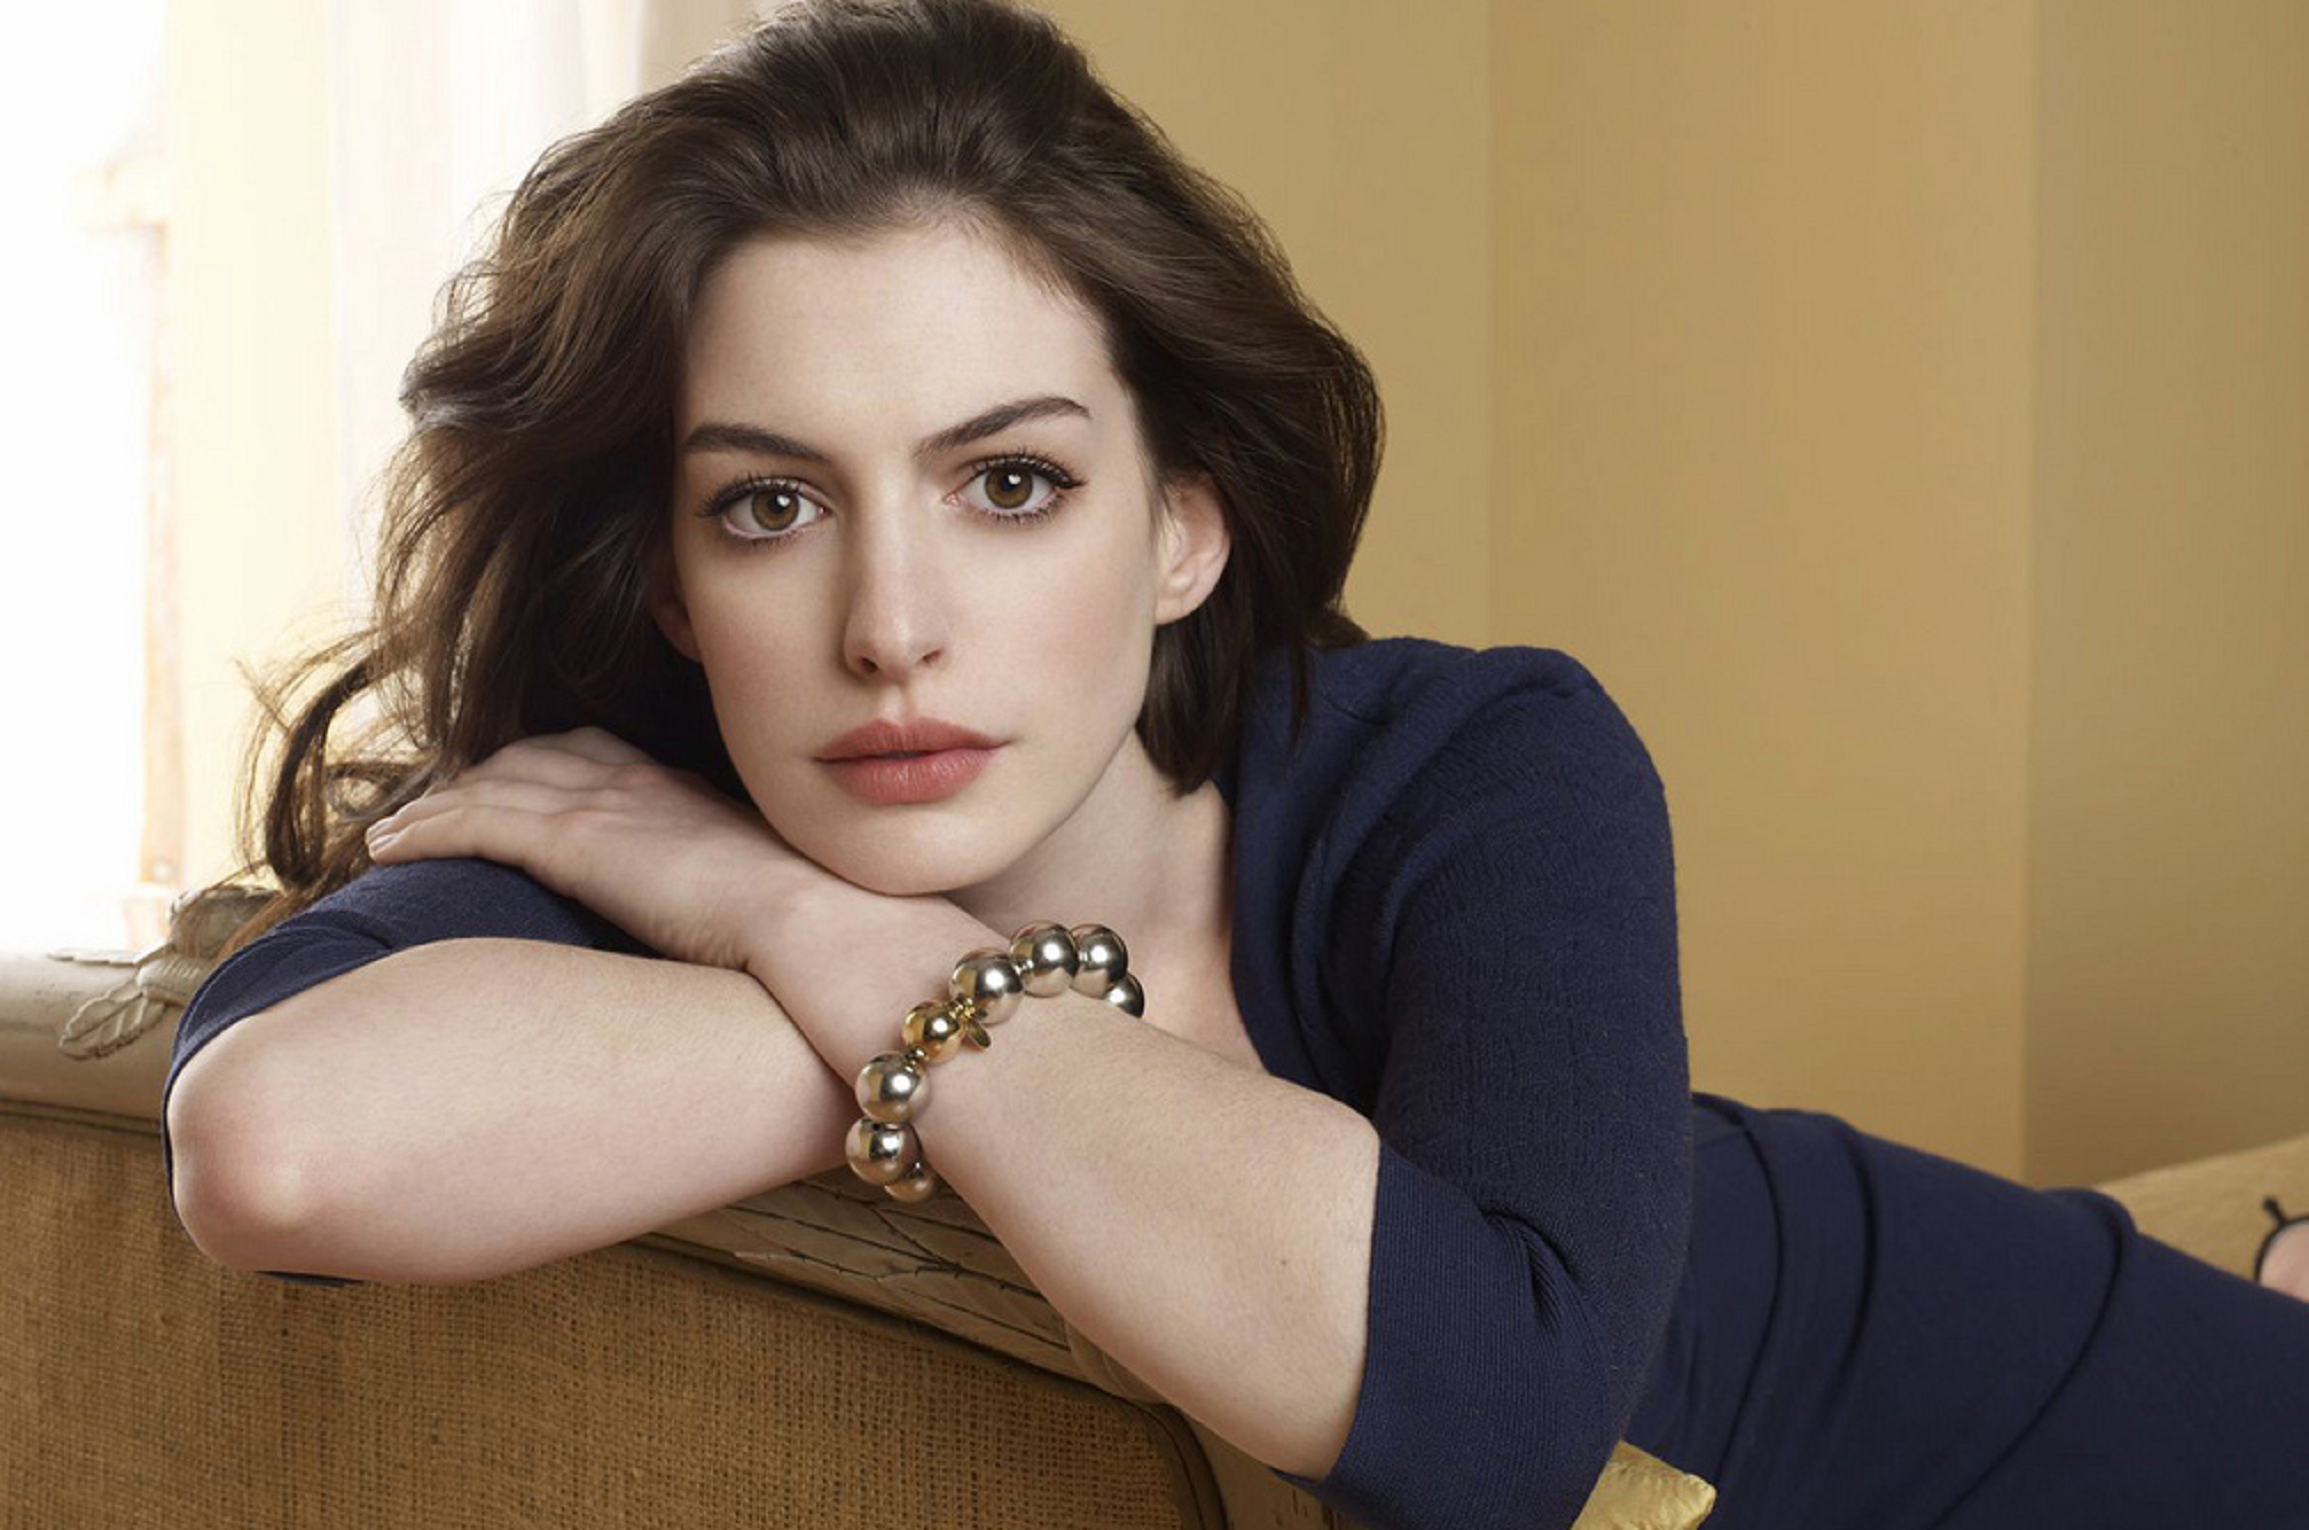 Roban fotografías íntimas del móvil de Anne Hathaway